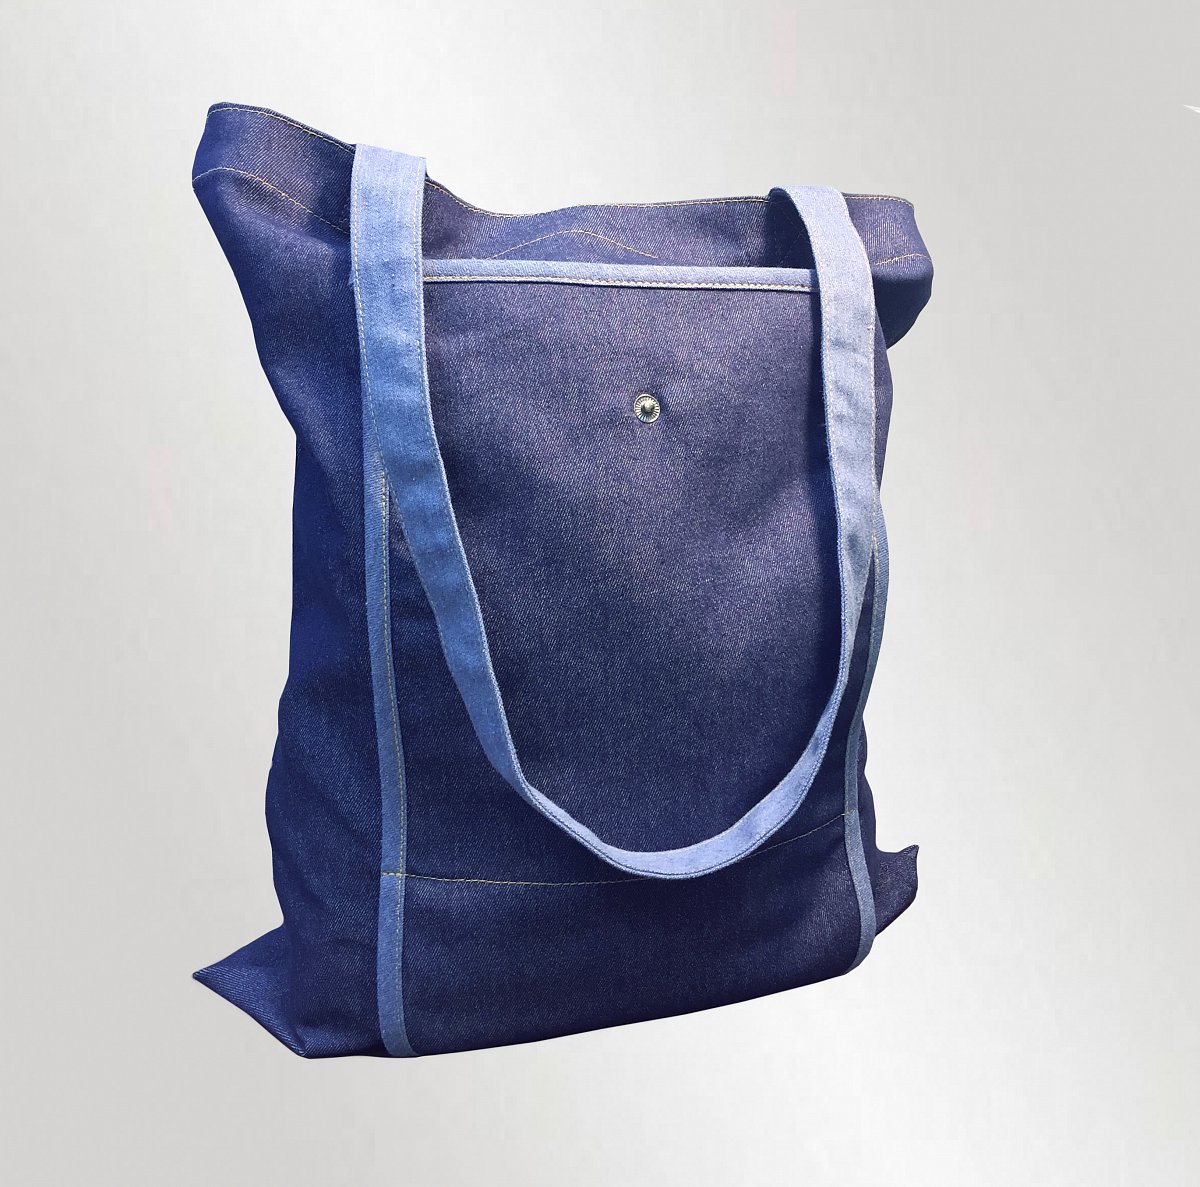 Пошив промо сумок - пример изделия: сумка трансформер